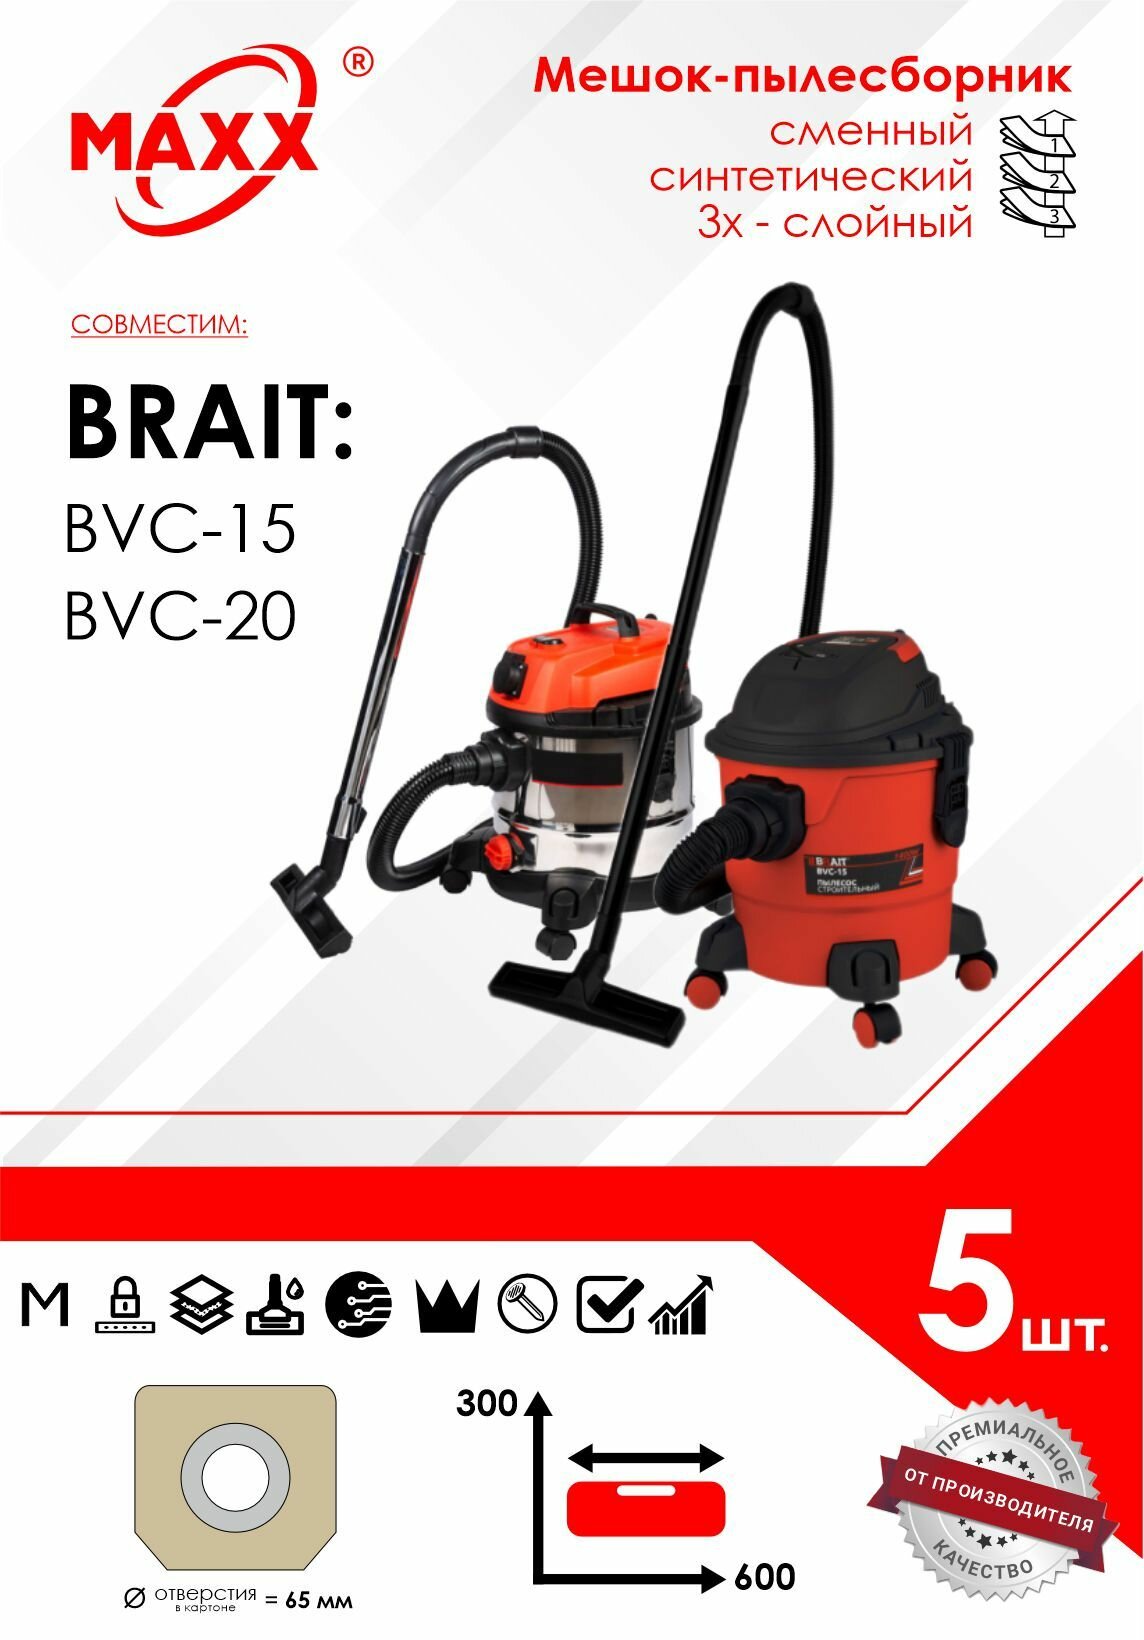 Мешок - пылесборник 5 шт. для строительного пылесоса BRAIT BVC-20, BRAIT BVC-15